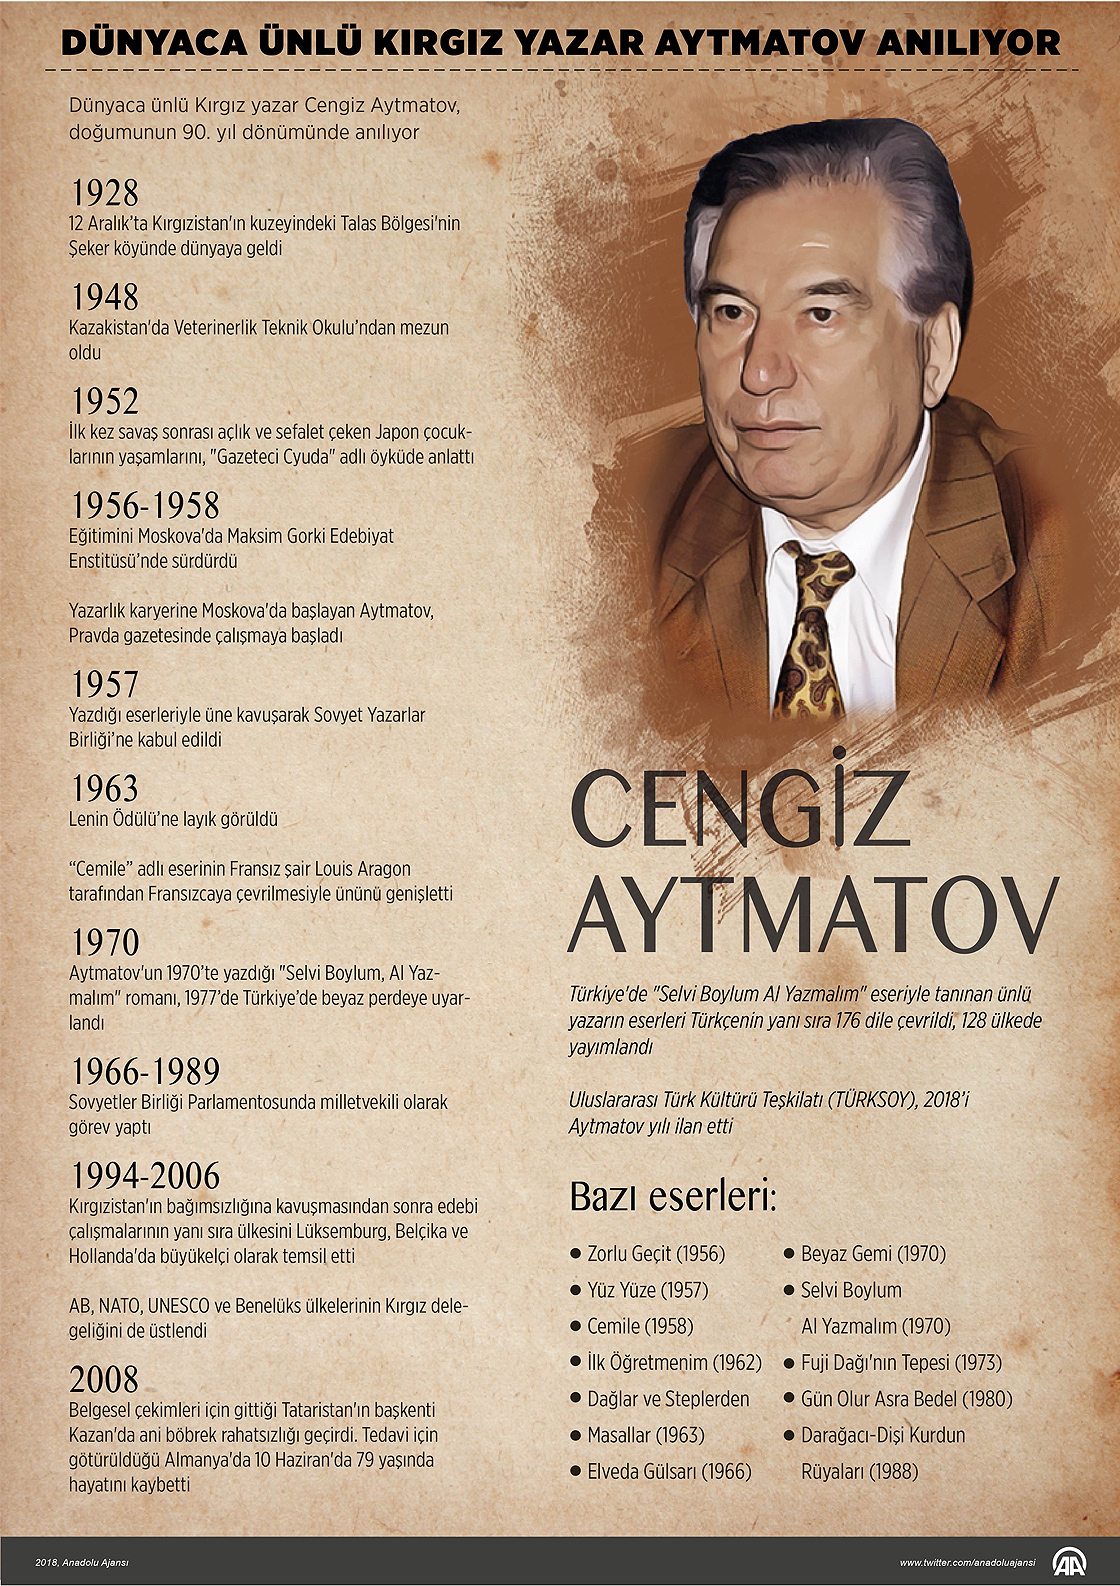 Dünyaca ünlü Kırgız yazar Aytmatov anılıyor